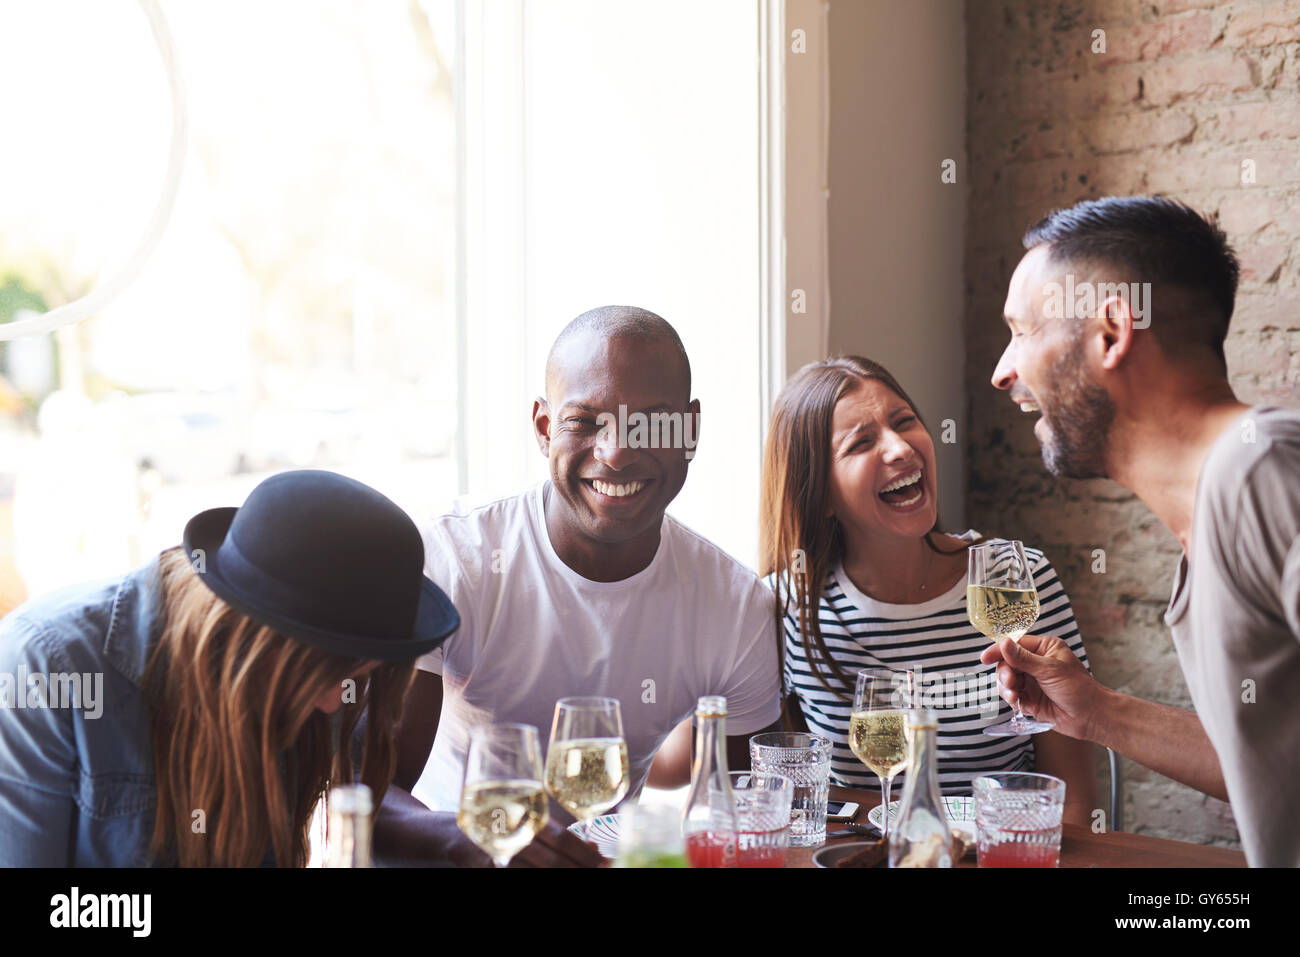 Allegro gruppo di giovani adulti bevuto vino da ridere mentre si è seduti al tavolo per la cena con la luce della finestra e il muro di mattoni in backgrou Foto Stock